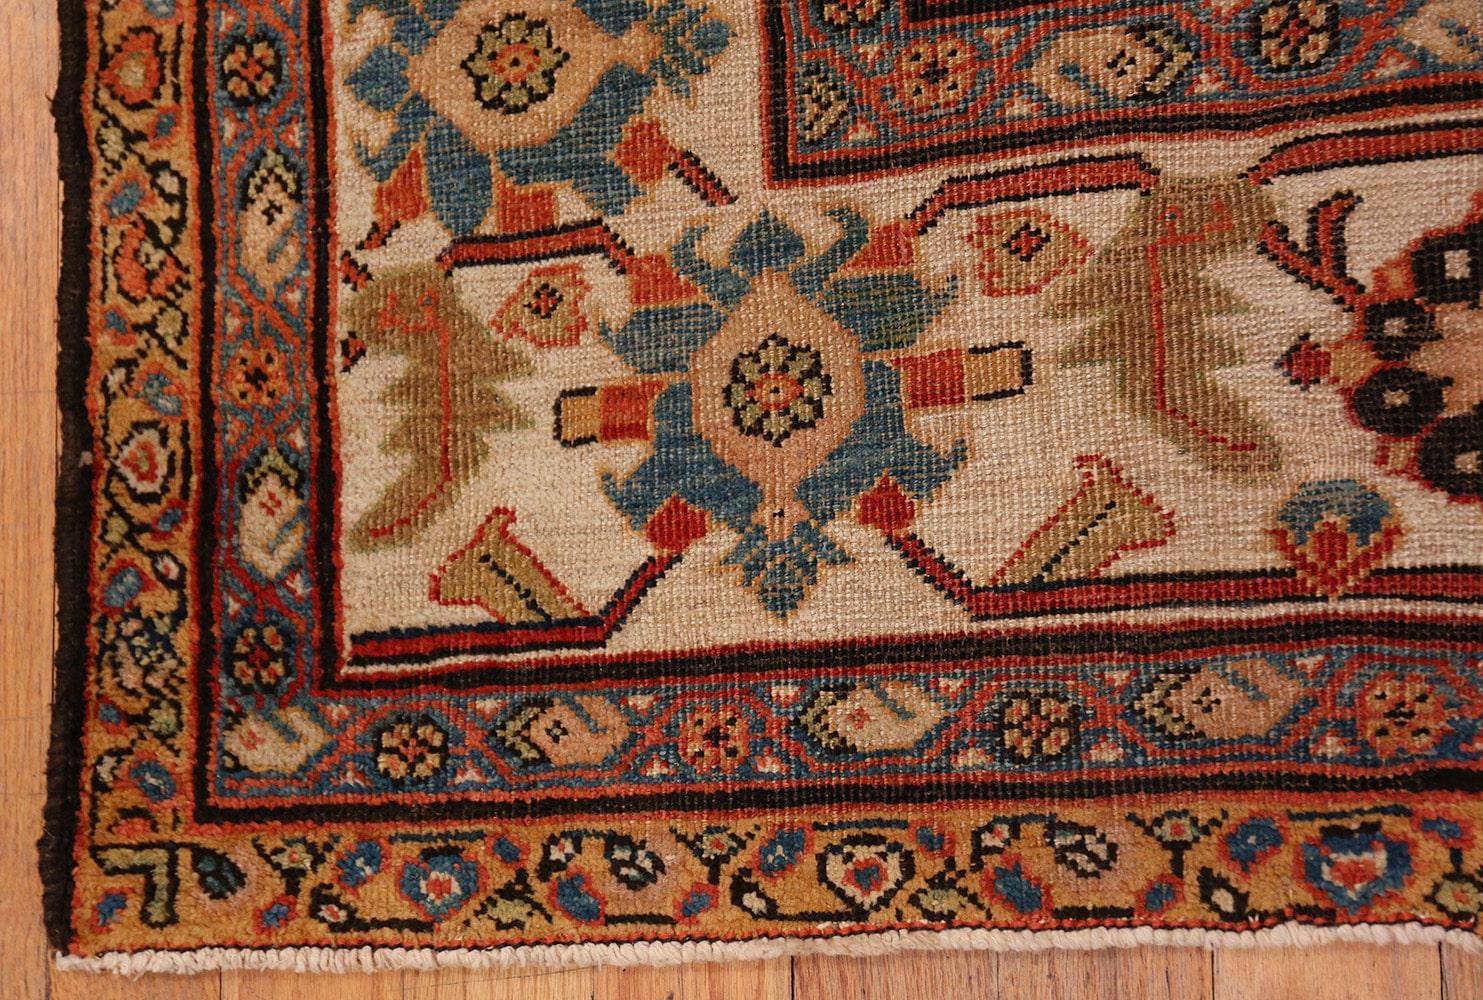 Tapis ancien Sultanabad à grande échelle, Origine : Perse, Circa 1900. Taille : 10 ft x 17 ft 5 in (3,05 m x 5,31 m)

Les tapis Sultanabad sont parmi les plus recherchés au monde. Leur collection et leur intérêt pour les architectes d'intérieur